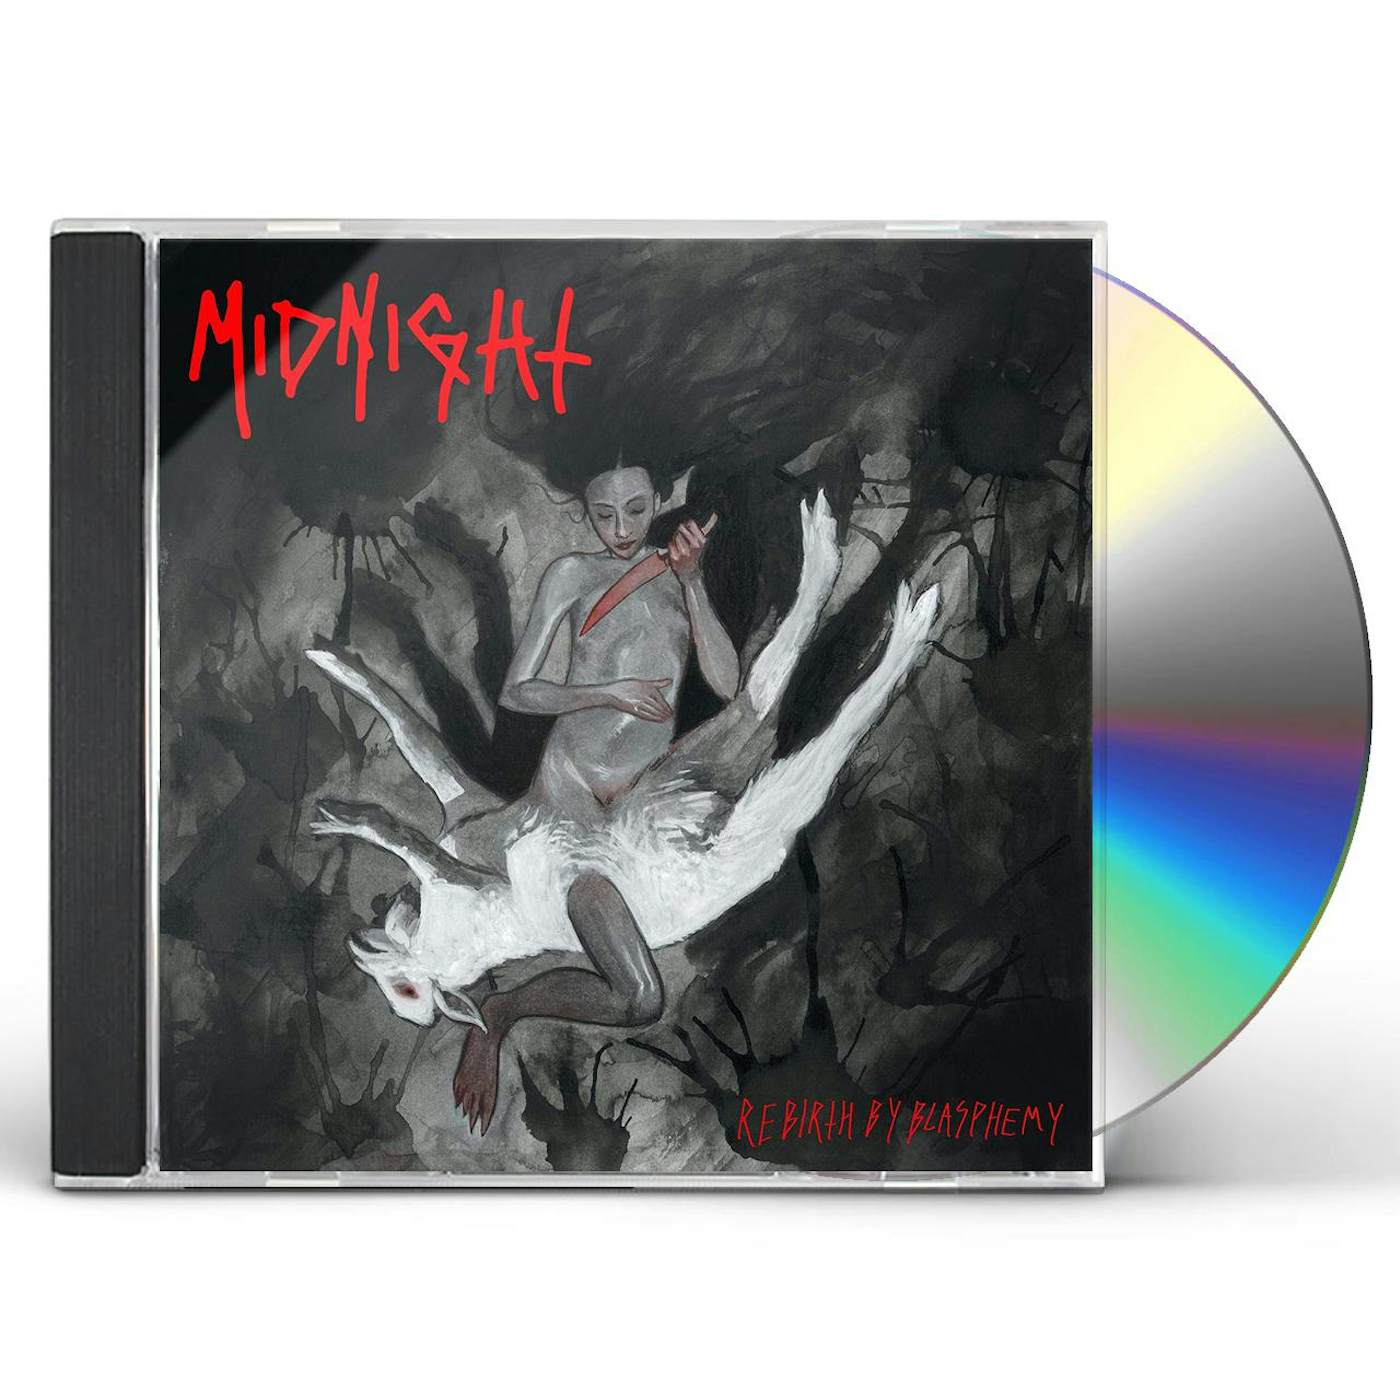 Midnight REBIRTH BY BLASPHEMY CD